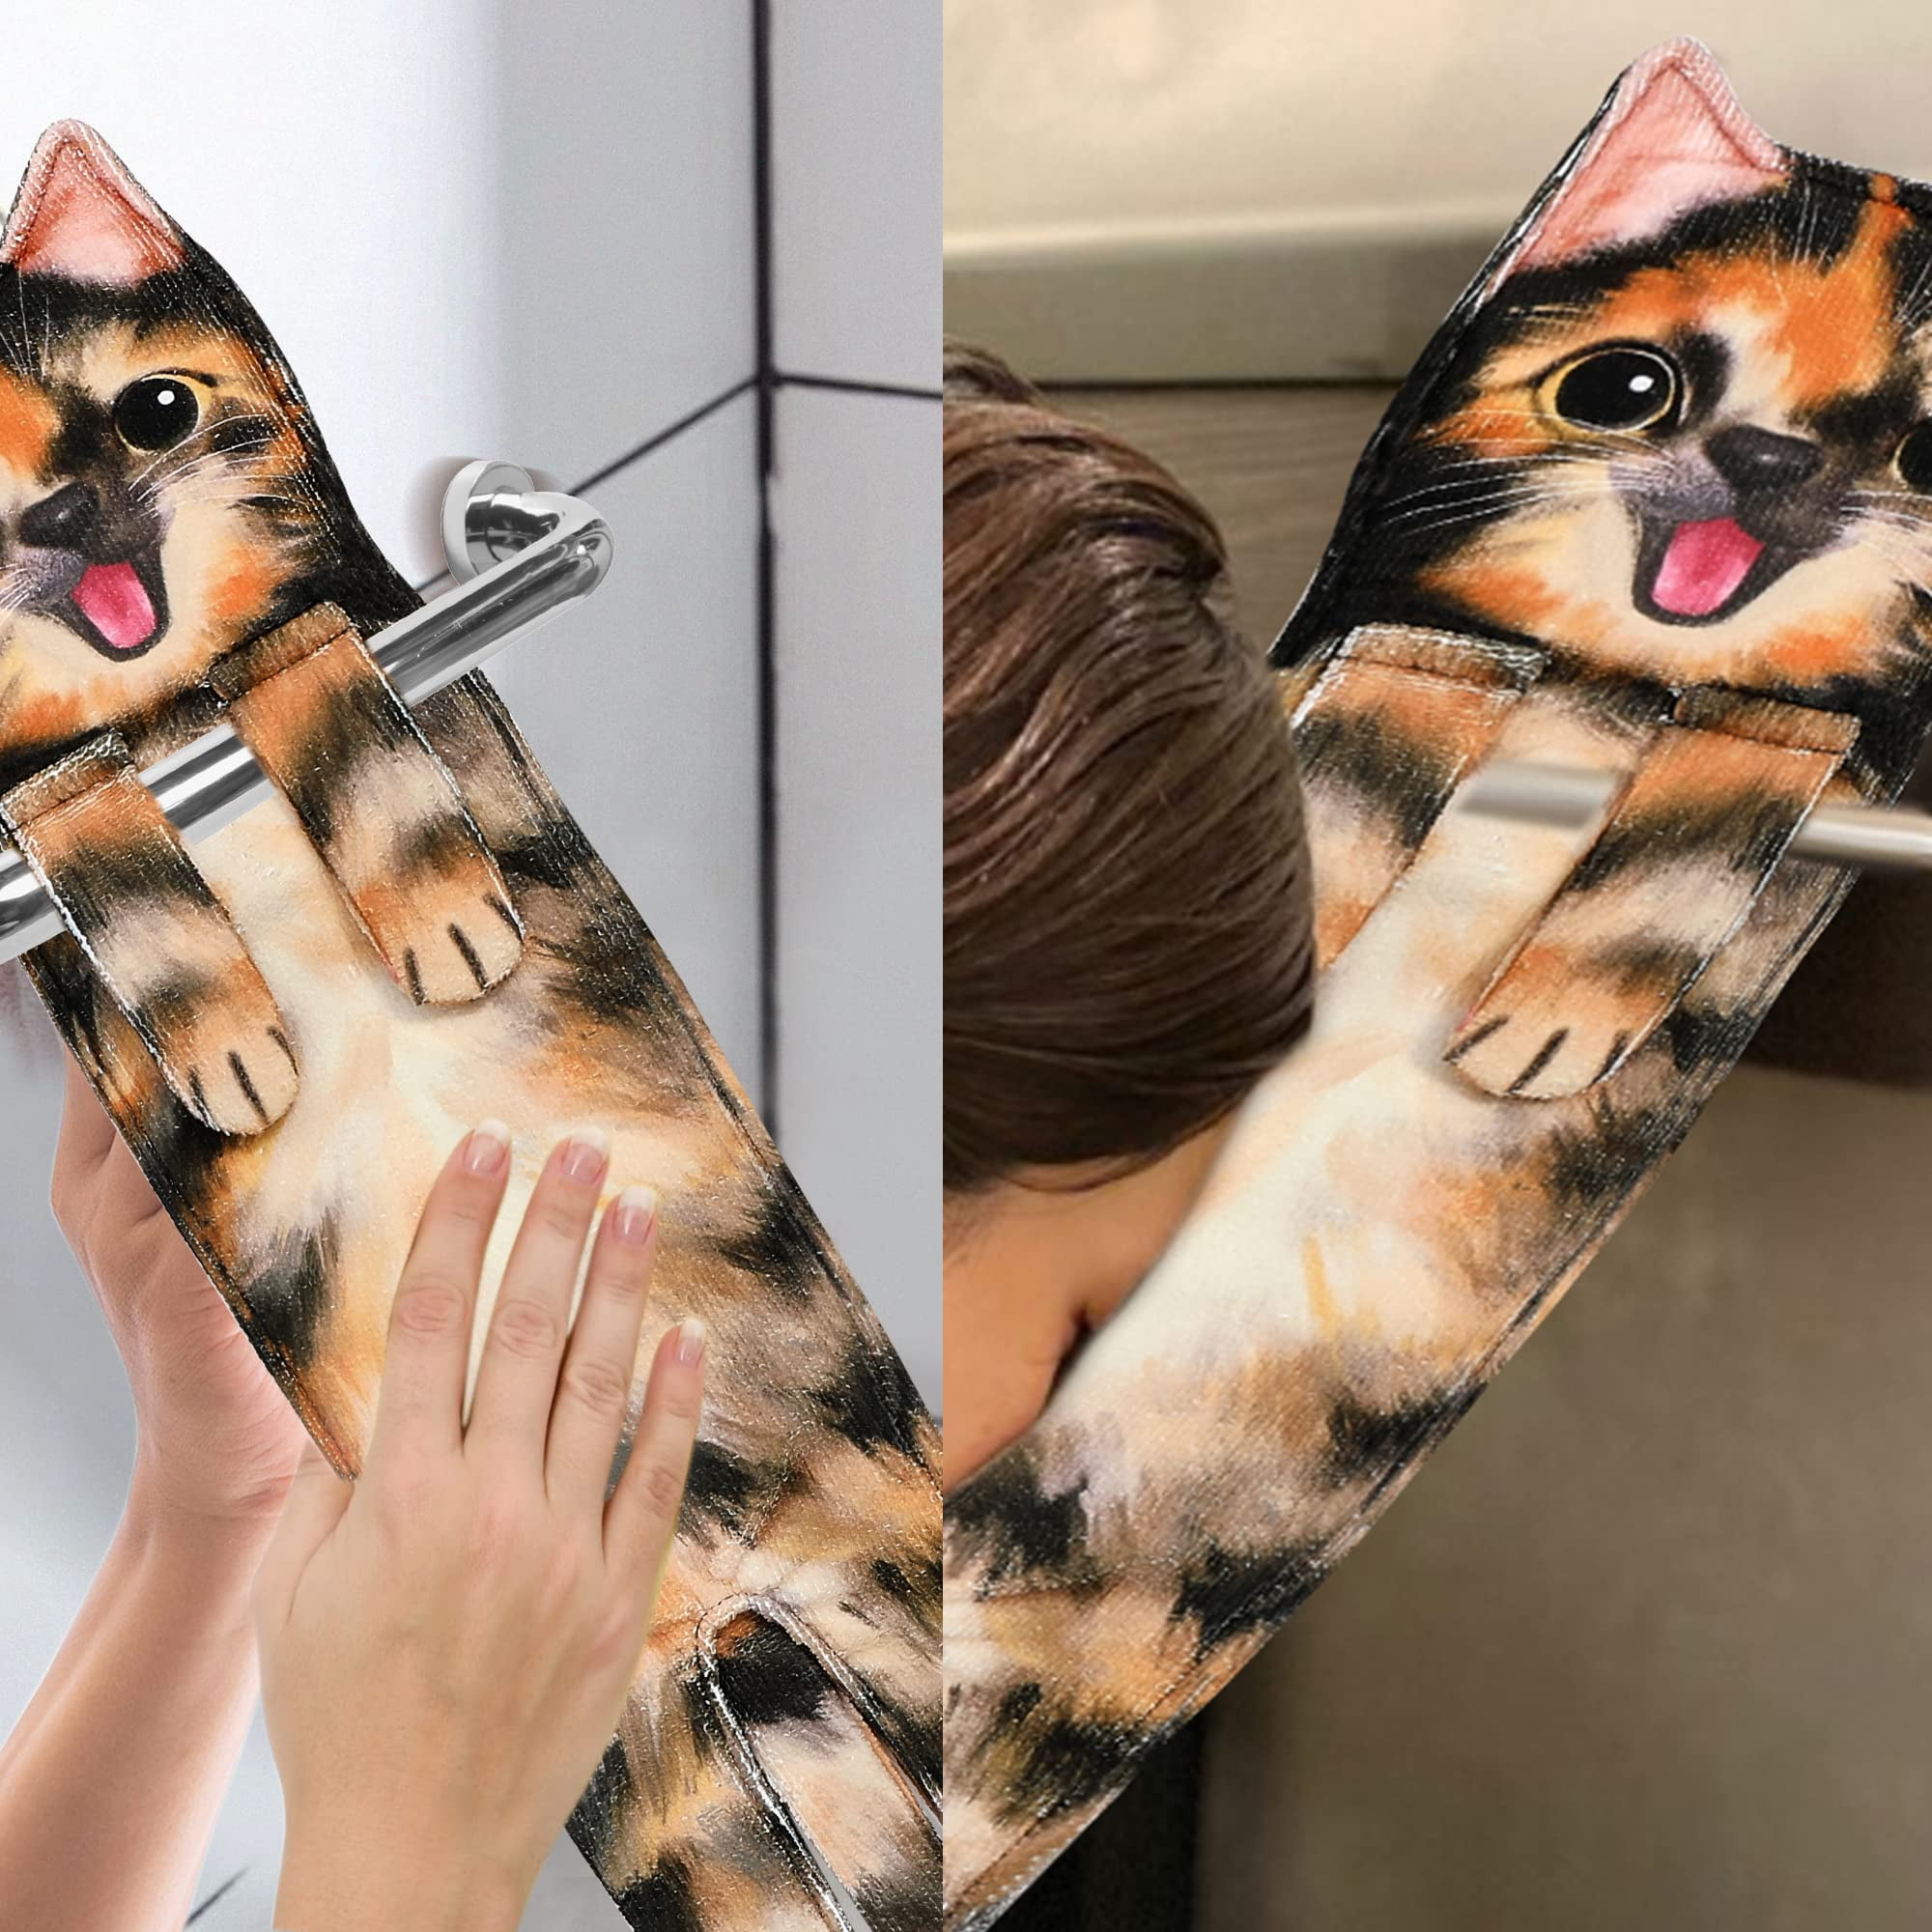 Cat Hand Towels Funny Kitchen Bathroom Cute Decorative Decor Hanging Towel  Tea